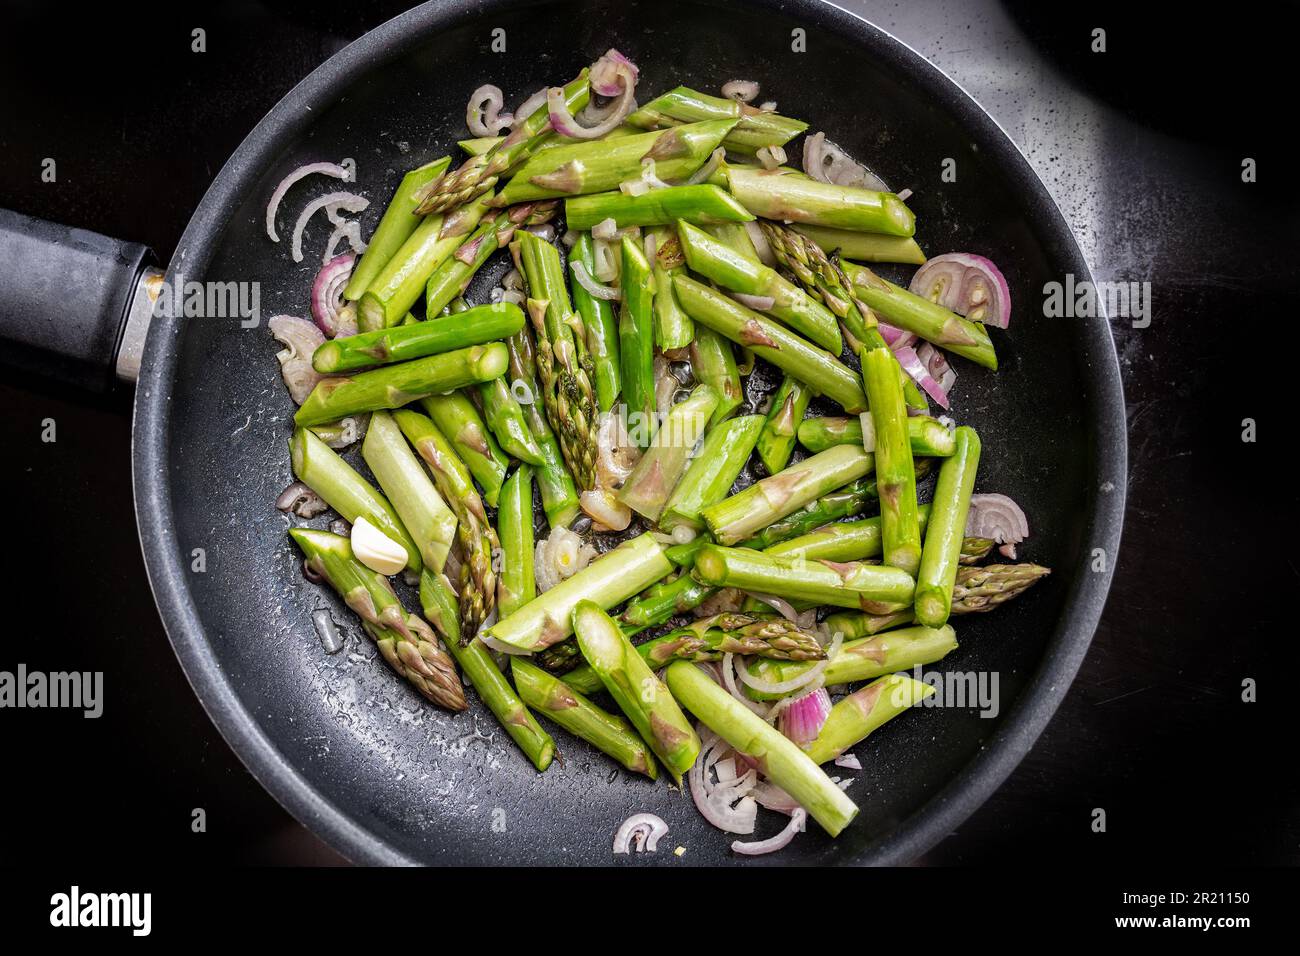 Asparagi verdi e cipolla rossa in una padella sul piano cottura nero, cucinando un pasto vegetariano sano con verdure di stagione, vista ad alta angolazione da Foto Stock